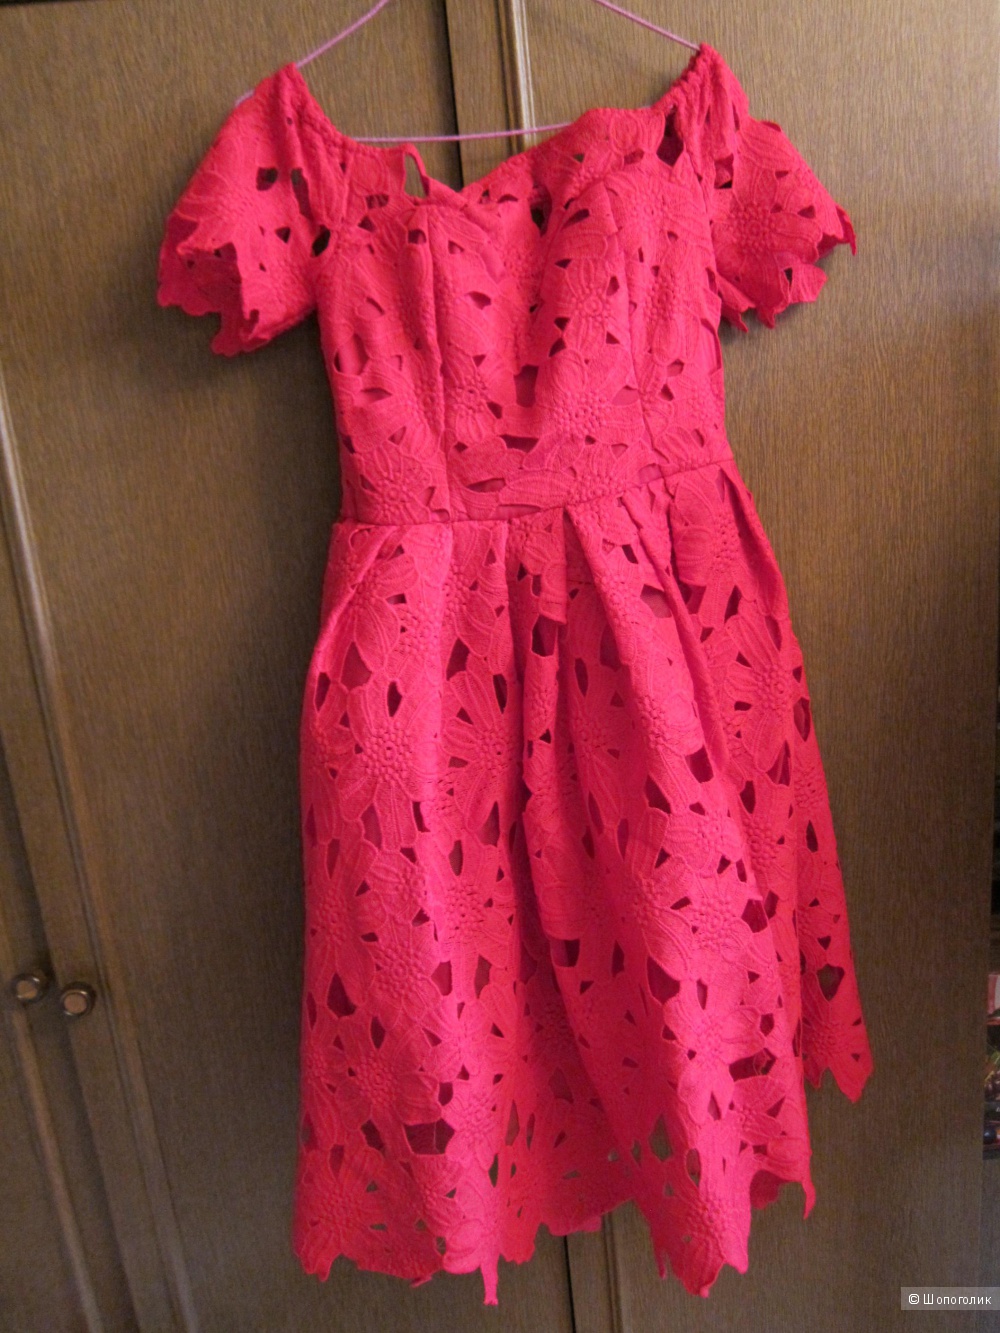 Новое красное платье Boohoo Cut Work Lace Prom Dress